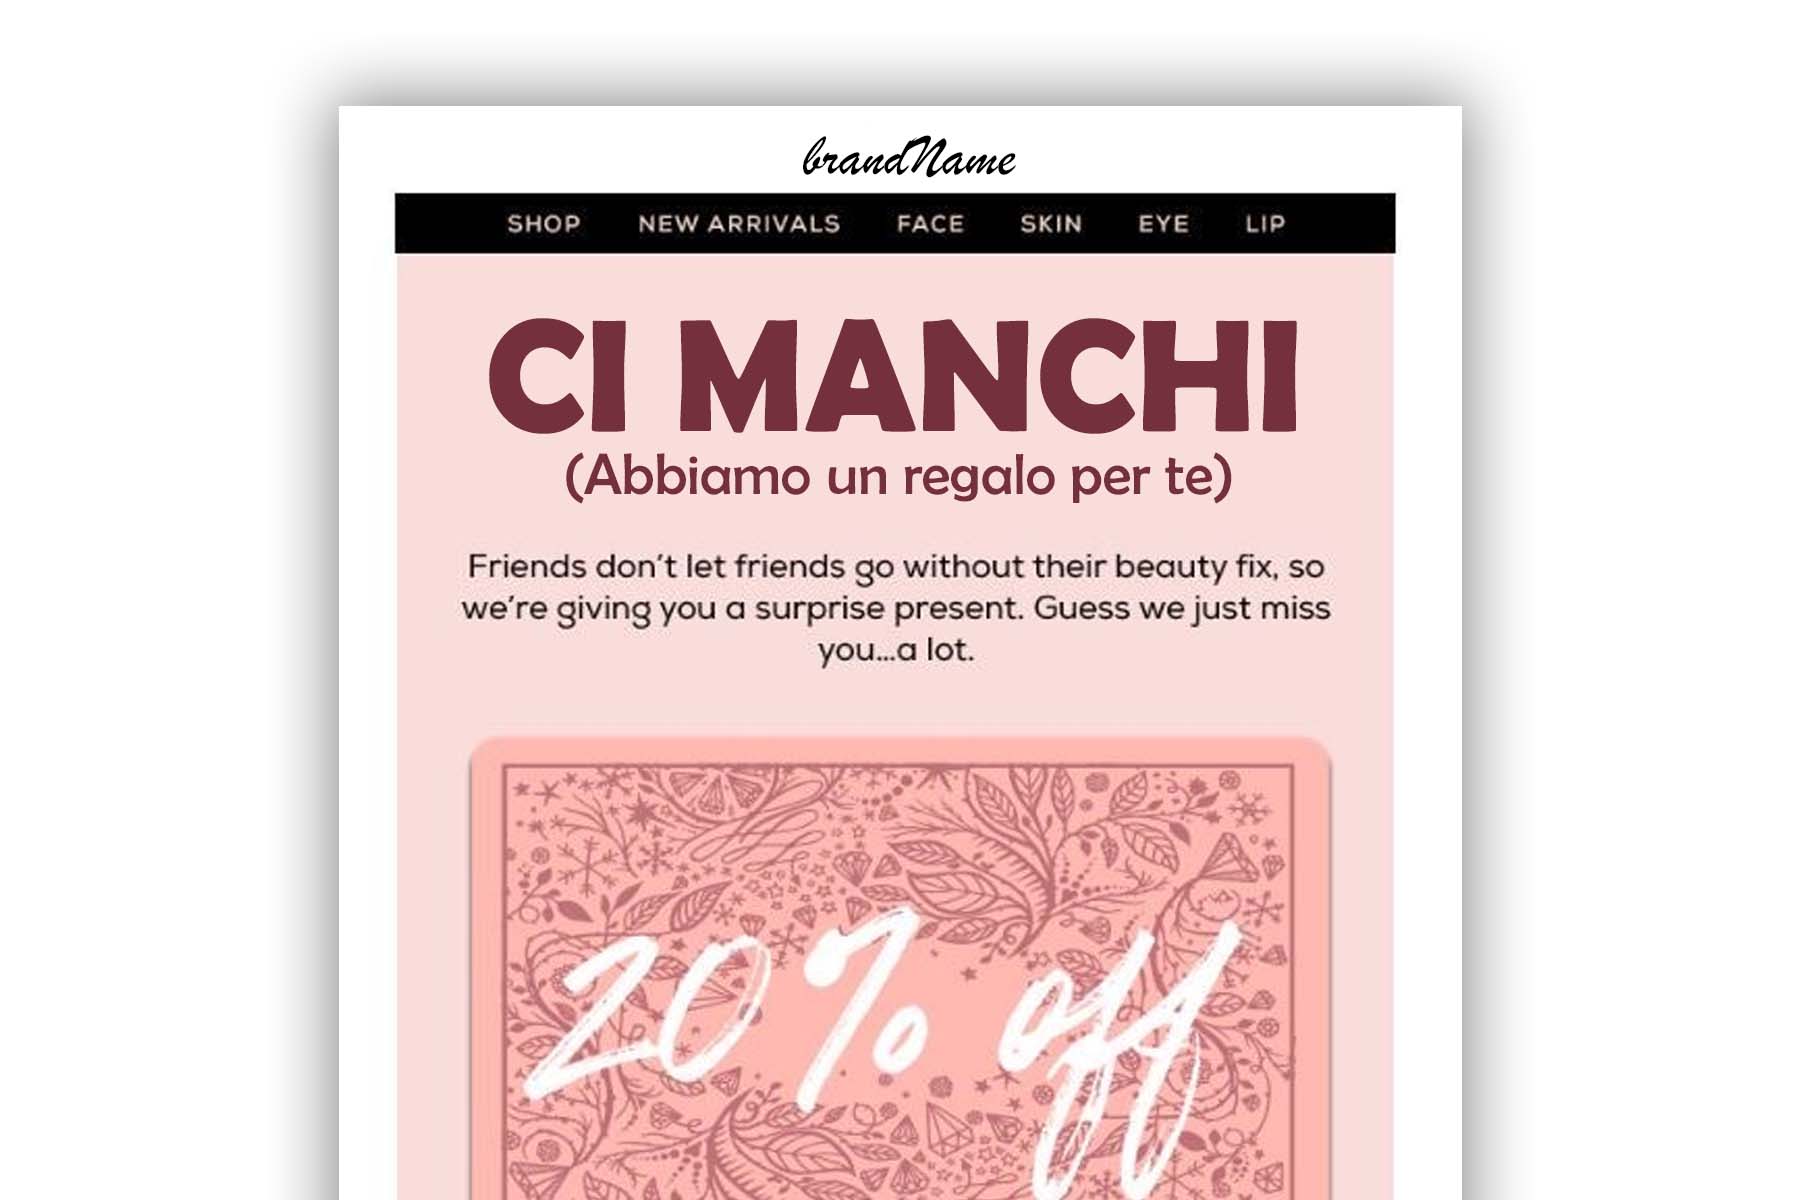 Un esempio di email di winback: con il titolo Ci Manchi si introduce una offerta/sconto se il Cliente torna ad acquistare.